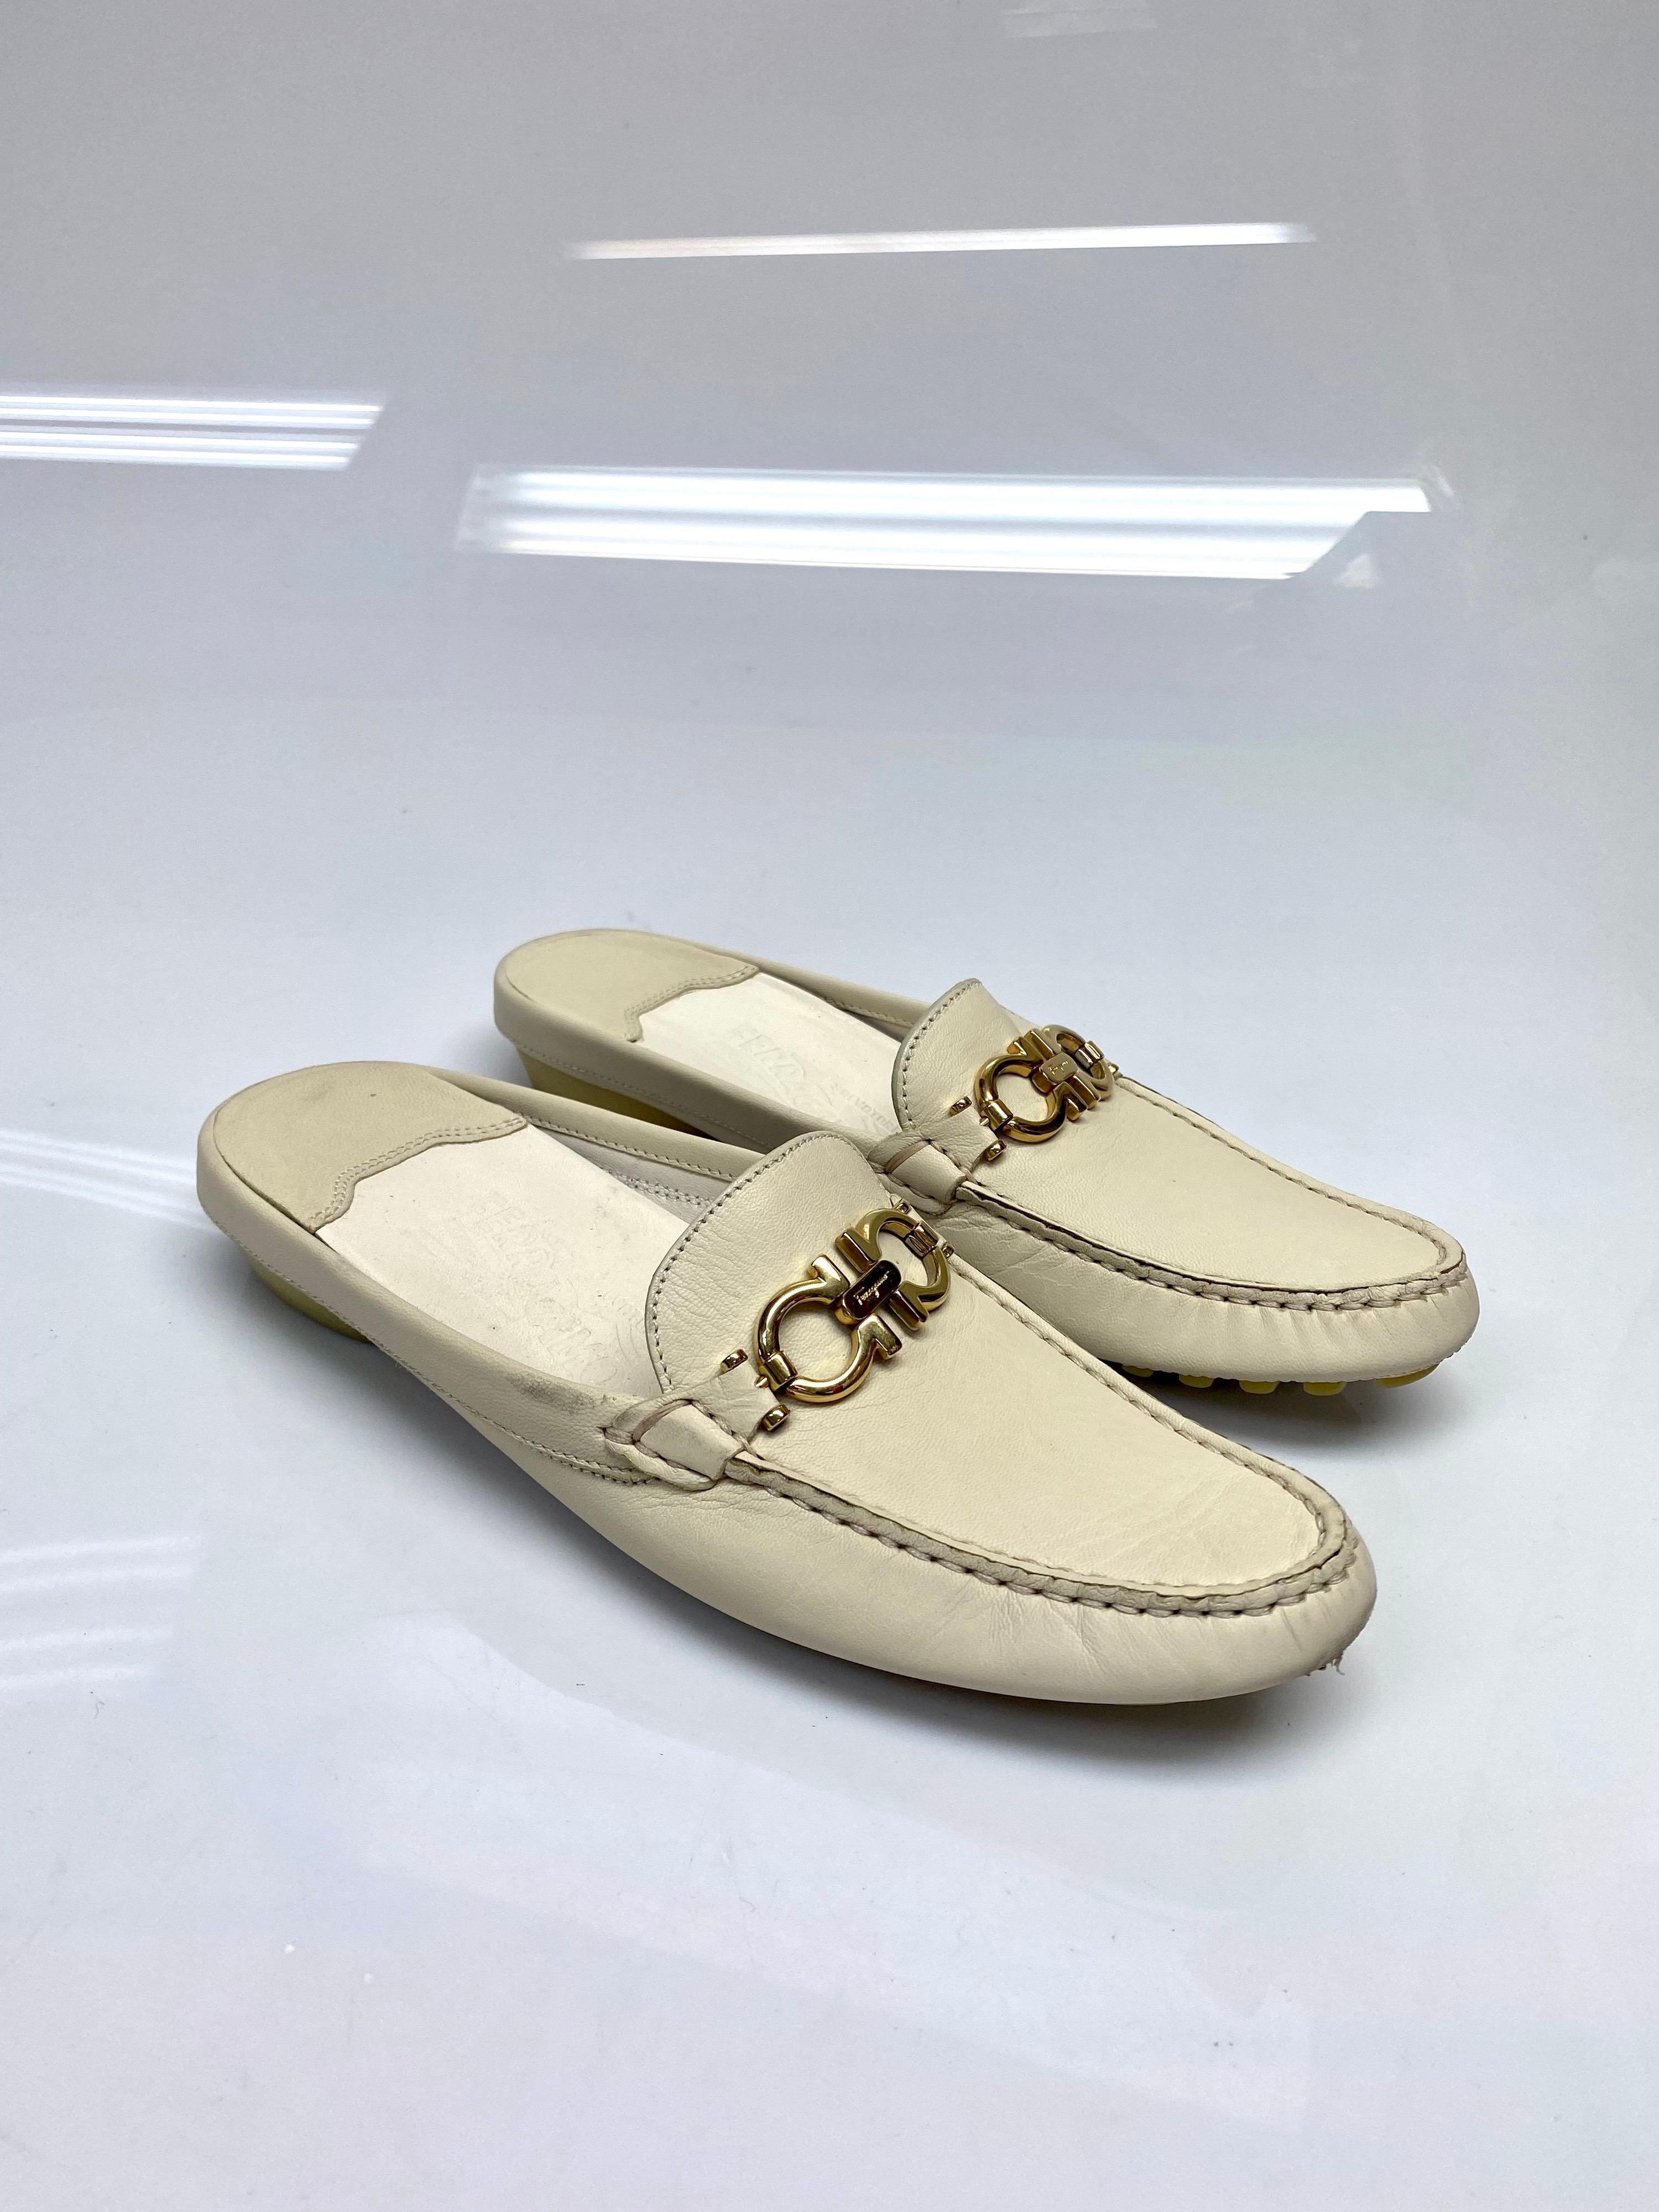 Chaussure mule en cuir ivoire Ferragamo Taille 6.5. Cette chaussure est réalisée en cuir de veau souple avec un bout légèrement arrondi, décoré d'une boucle Gancini. Cette paire est également dotée d'un dos rembourré pour plus de confort. Une